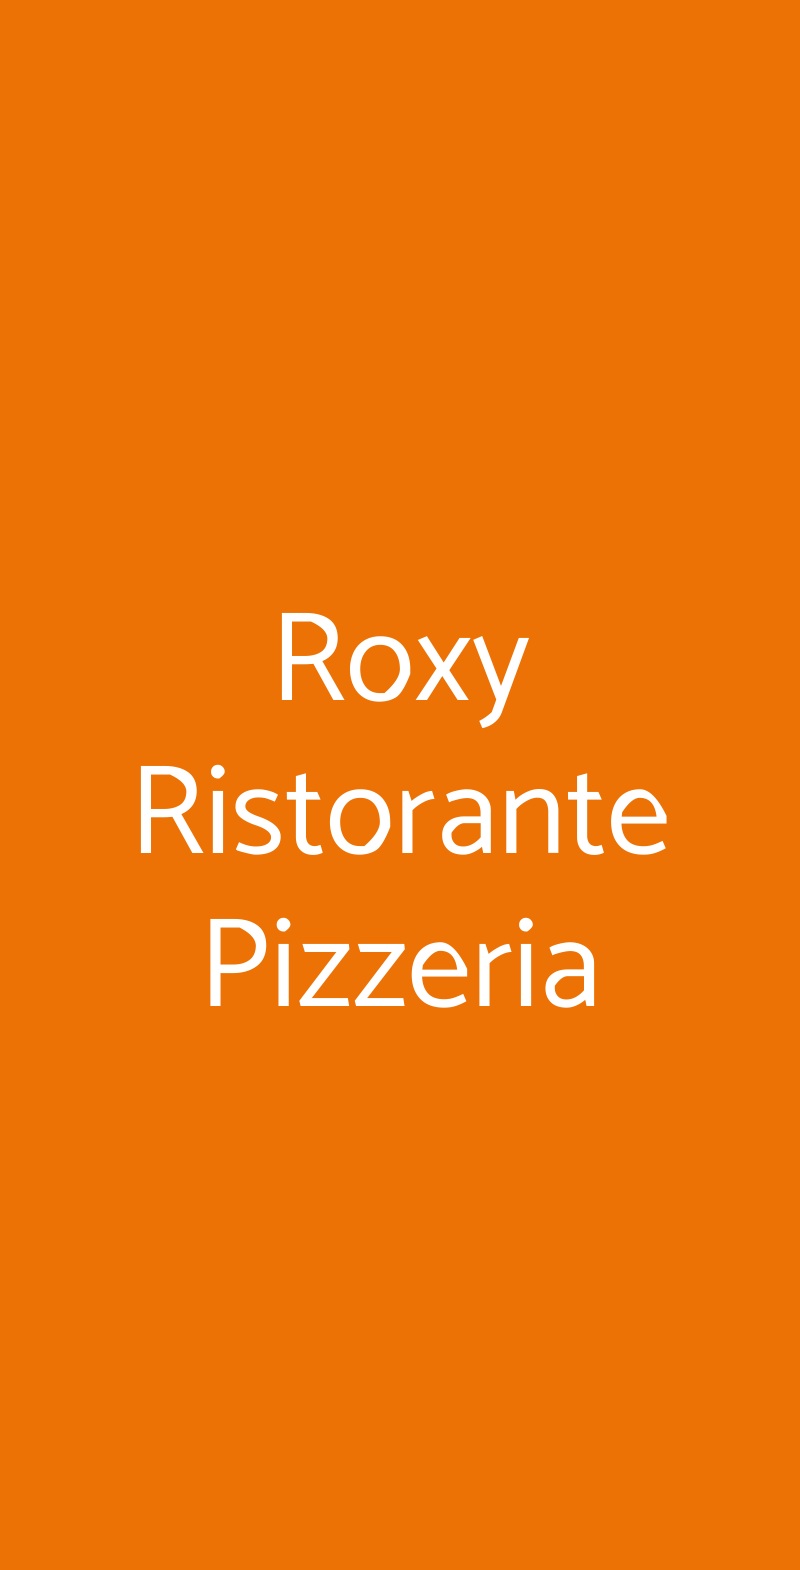 Roxy Ristorante Pizzeria Aprilia menù 1 pagina